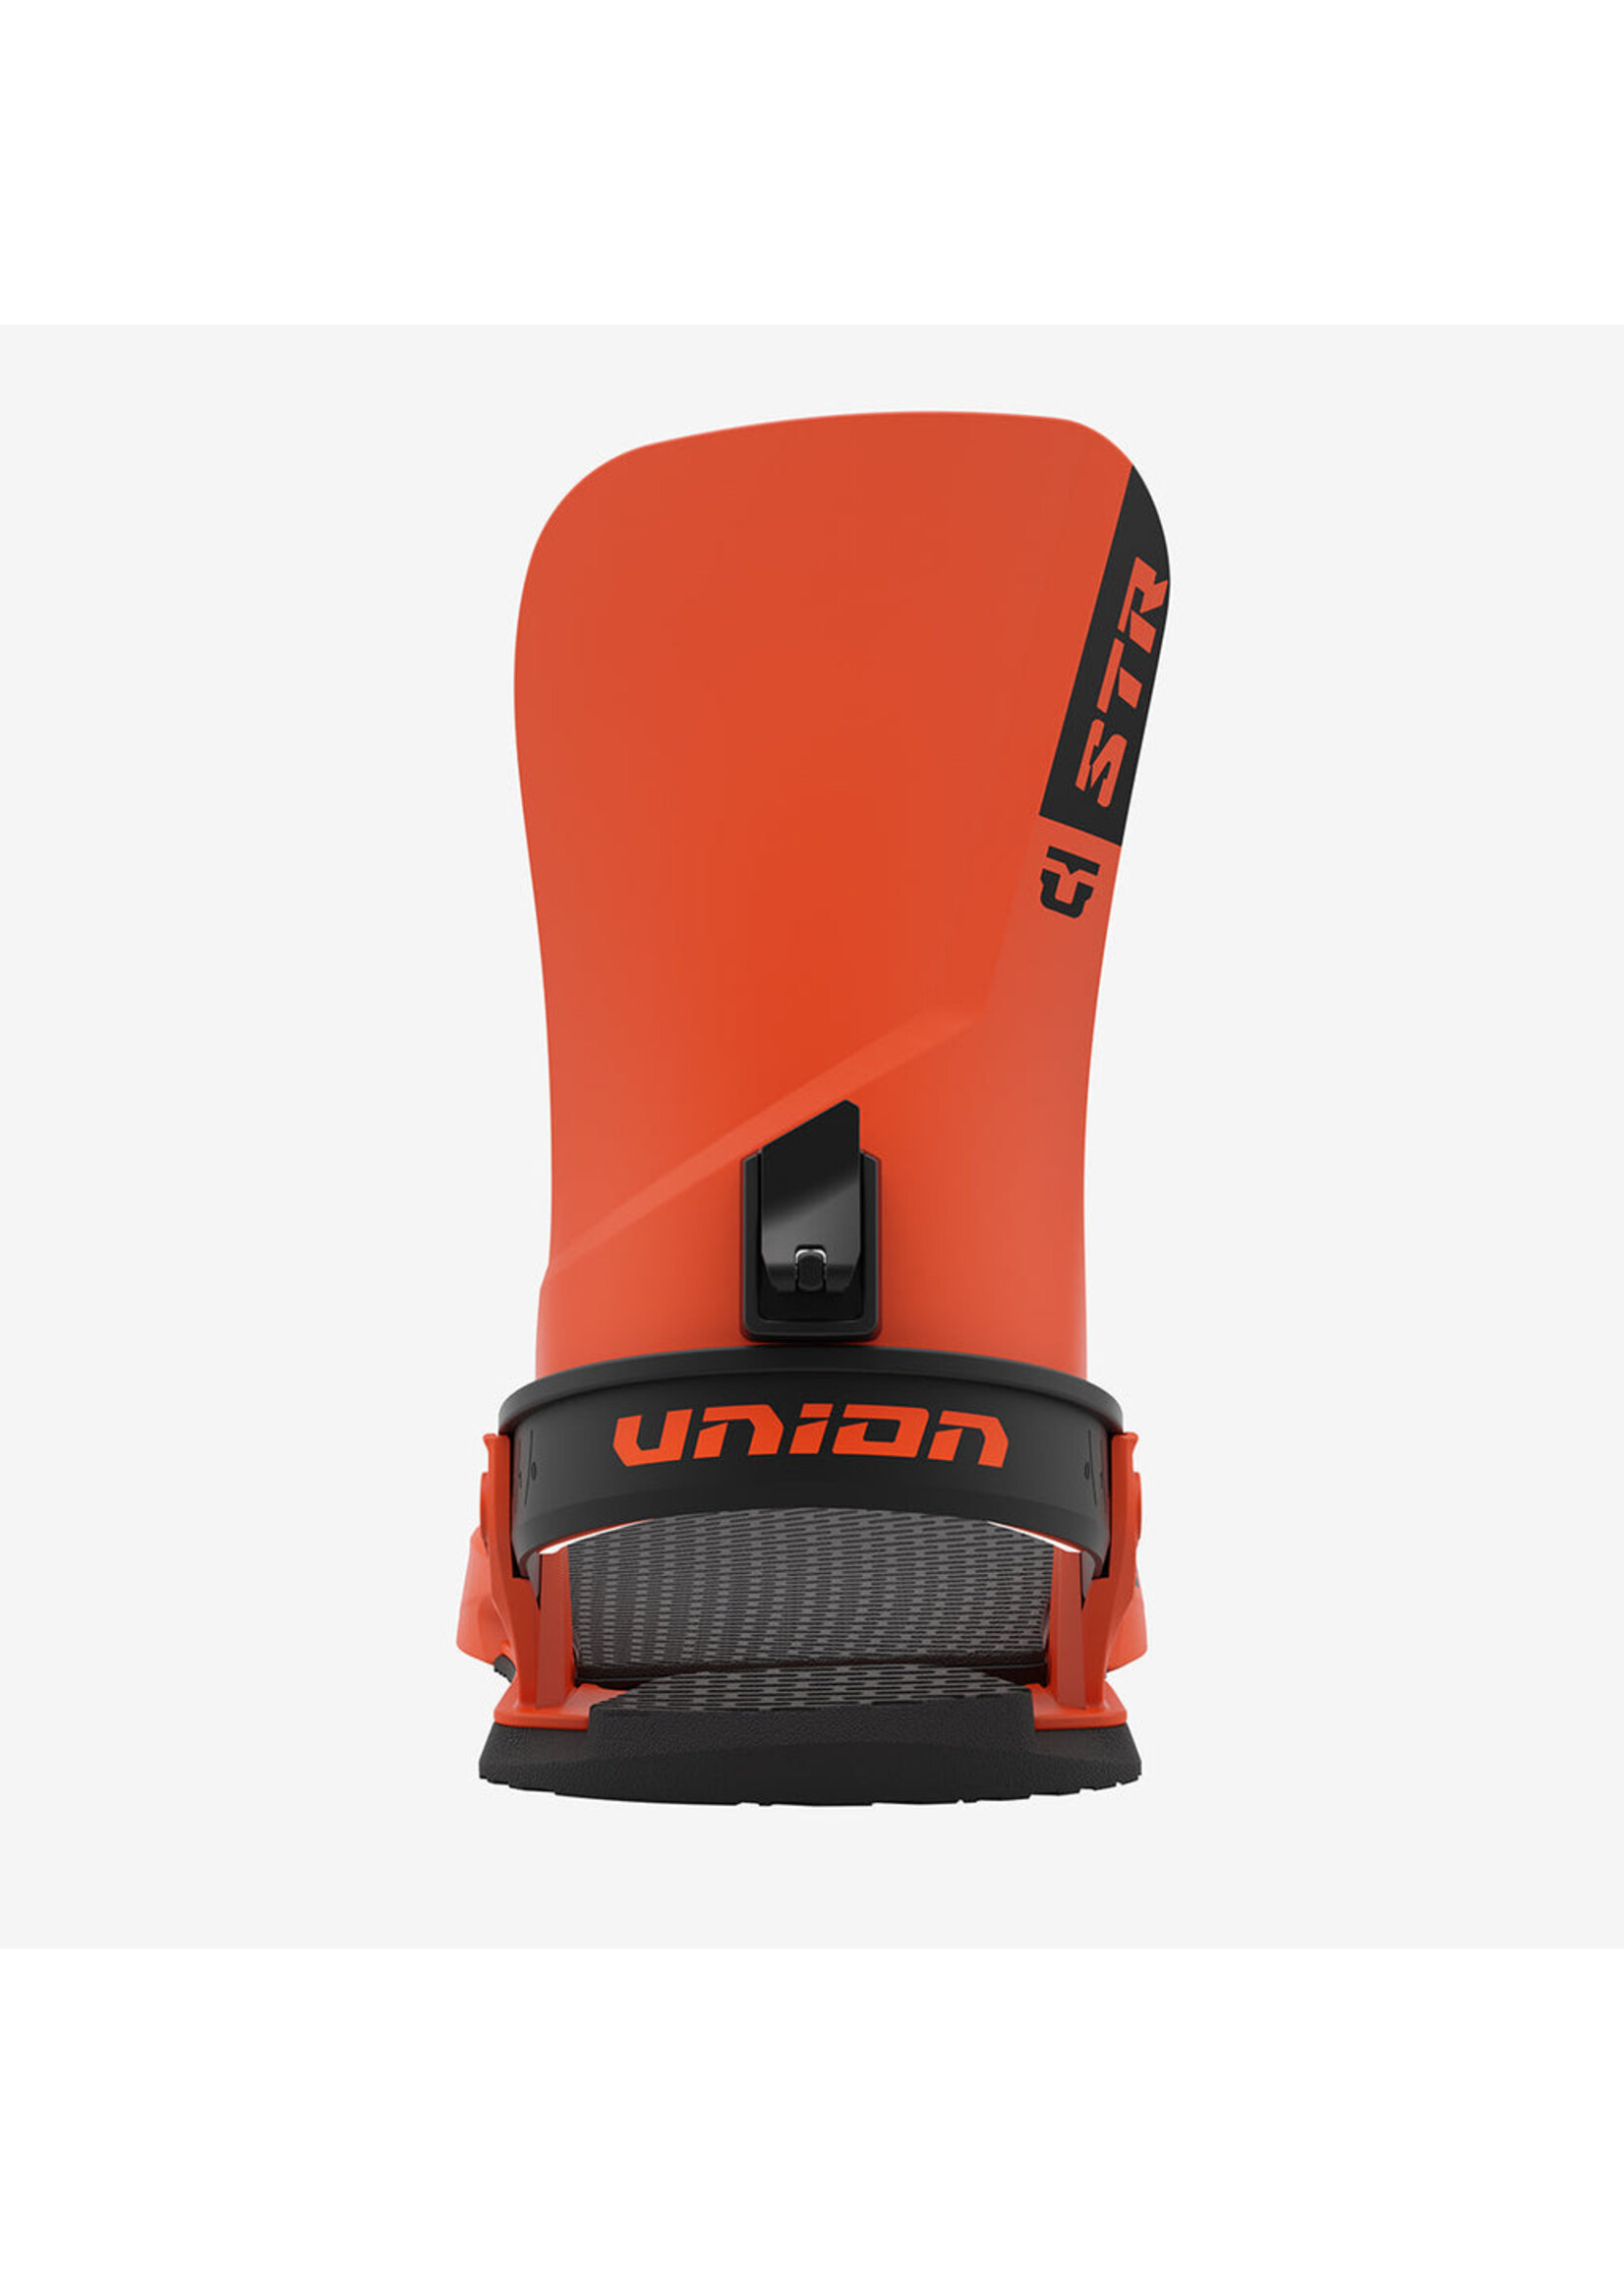 Union STR - Orange